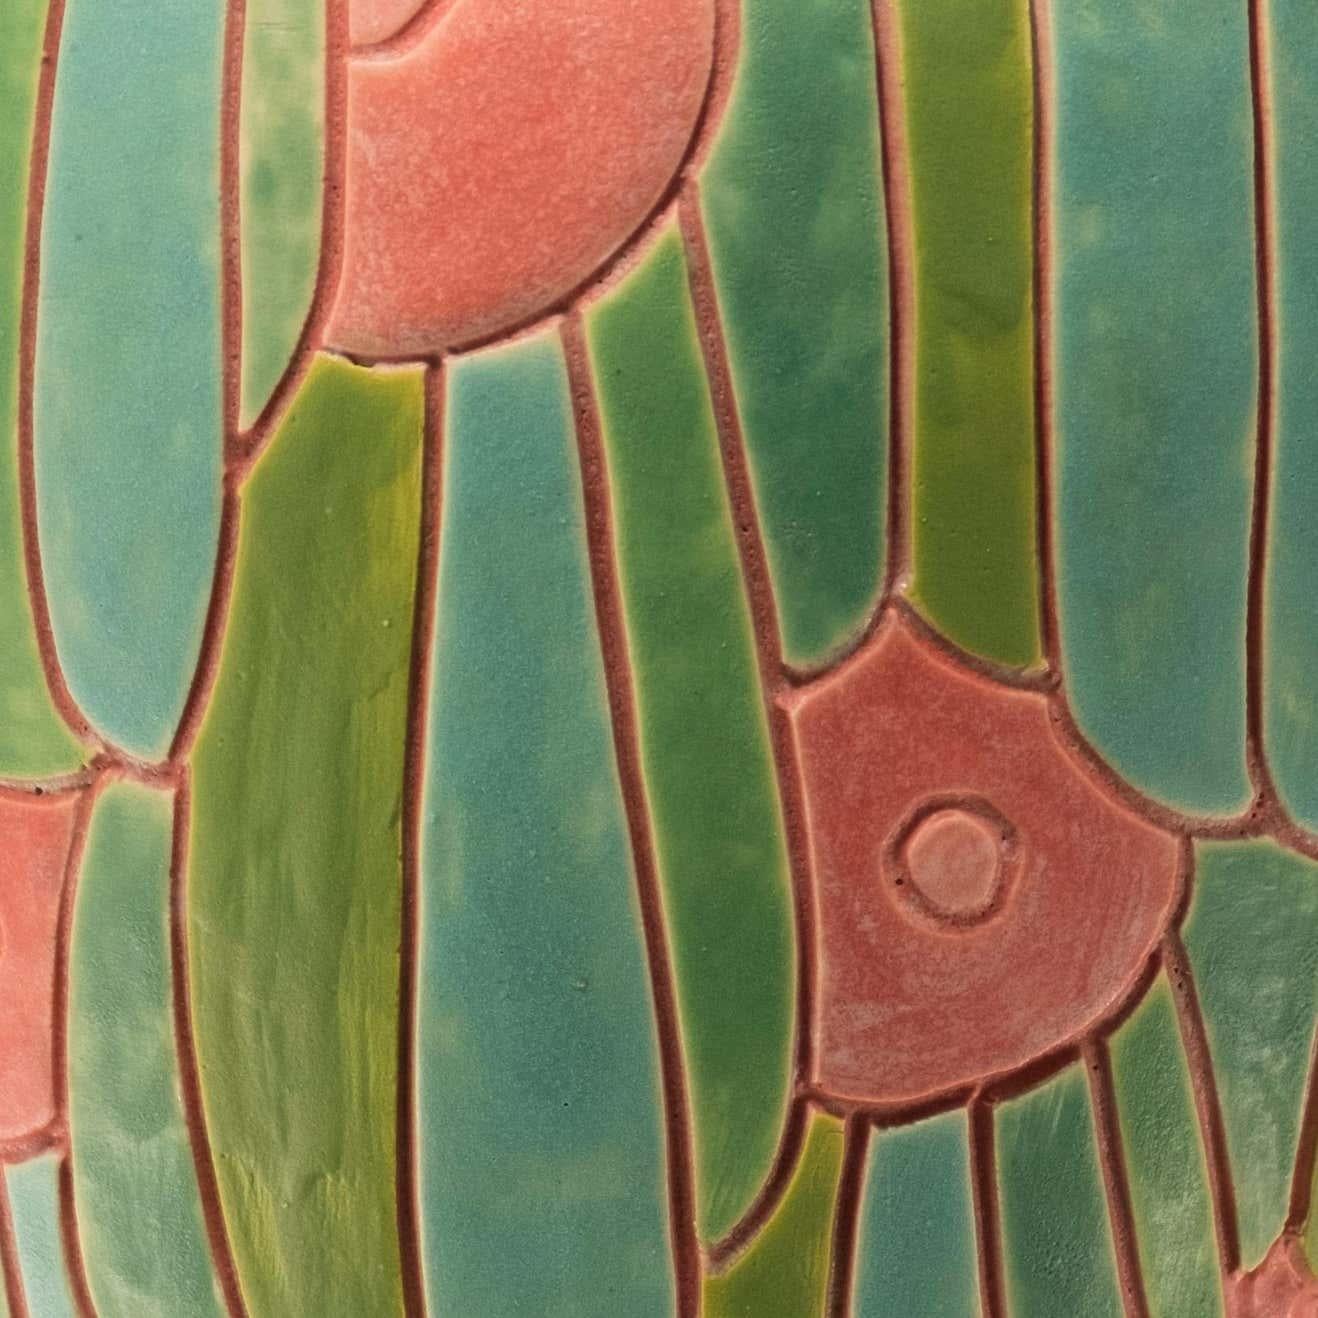 Handgeschnitztes Porzellan Kunst Keramik Urne Form Vase, 
mit dem mehrfarbigen Federmuster des Umhangs eines Maya-Indianer-Herrschers. 
Handarbeit von Christopher Brody.
5-6 Wochen Vorlaufzeit für kundenspezifische Bestellungen.
 